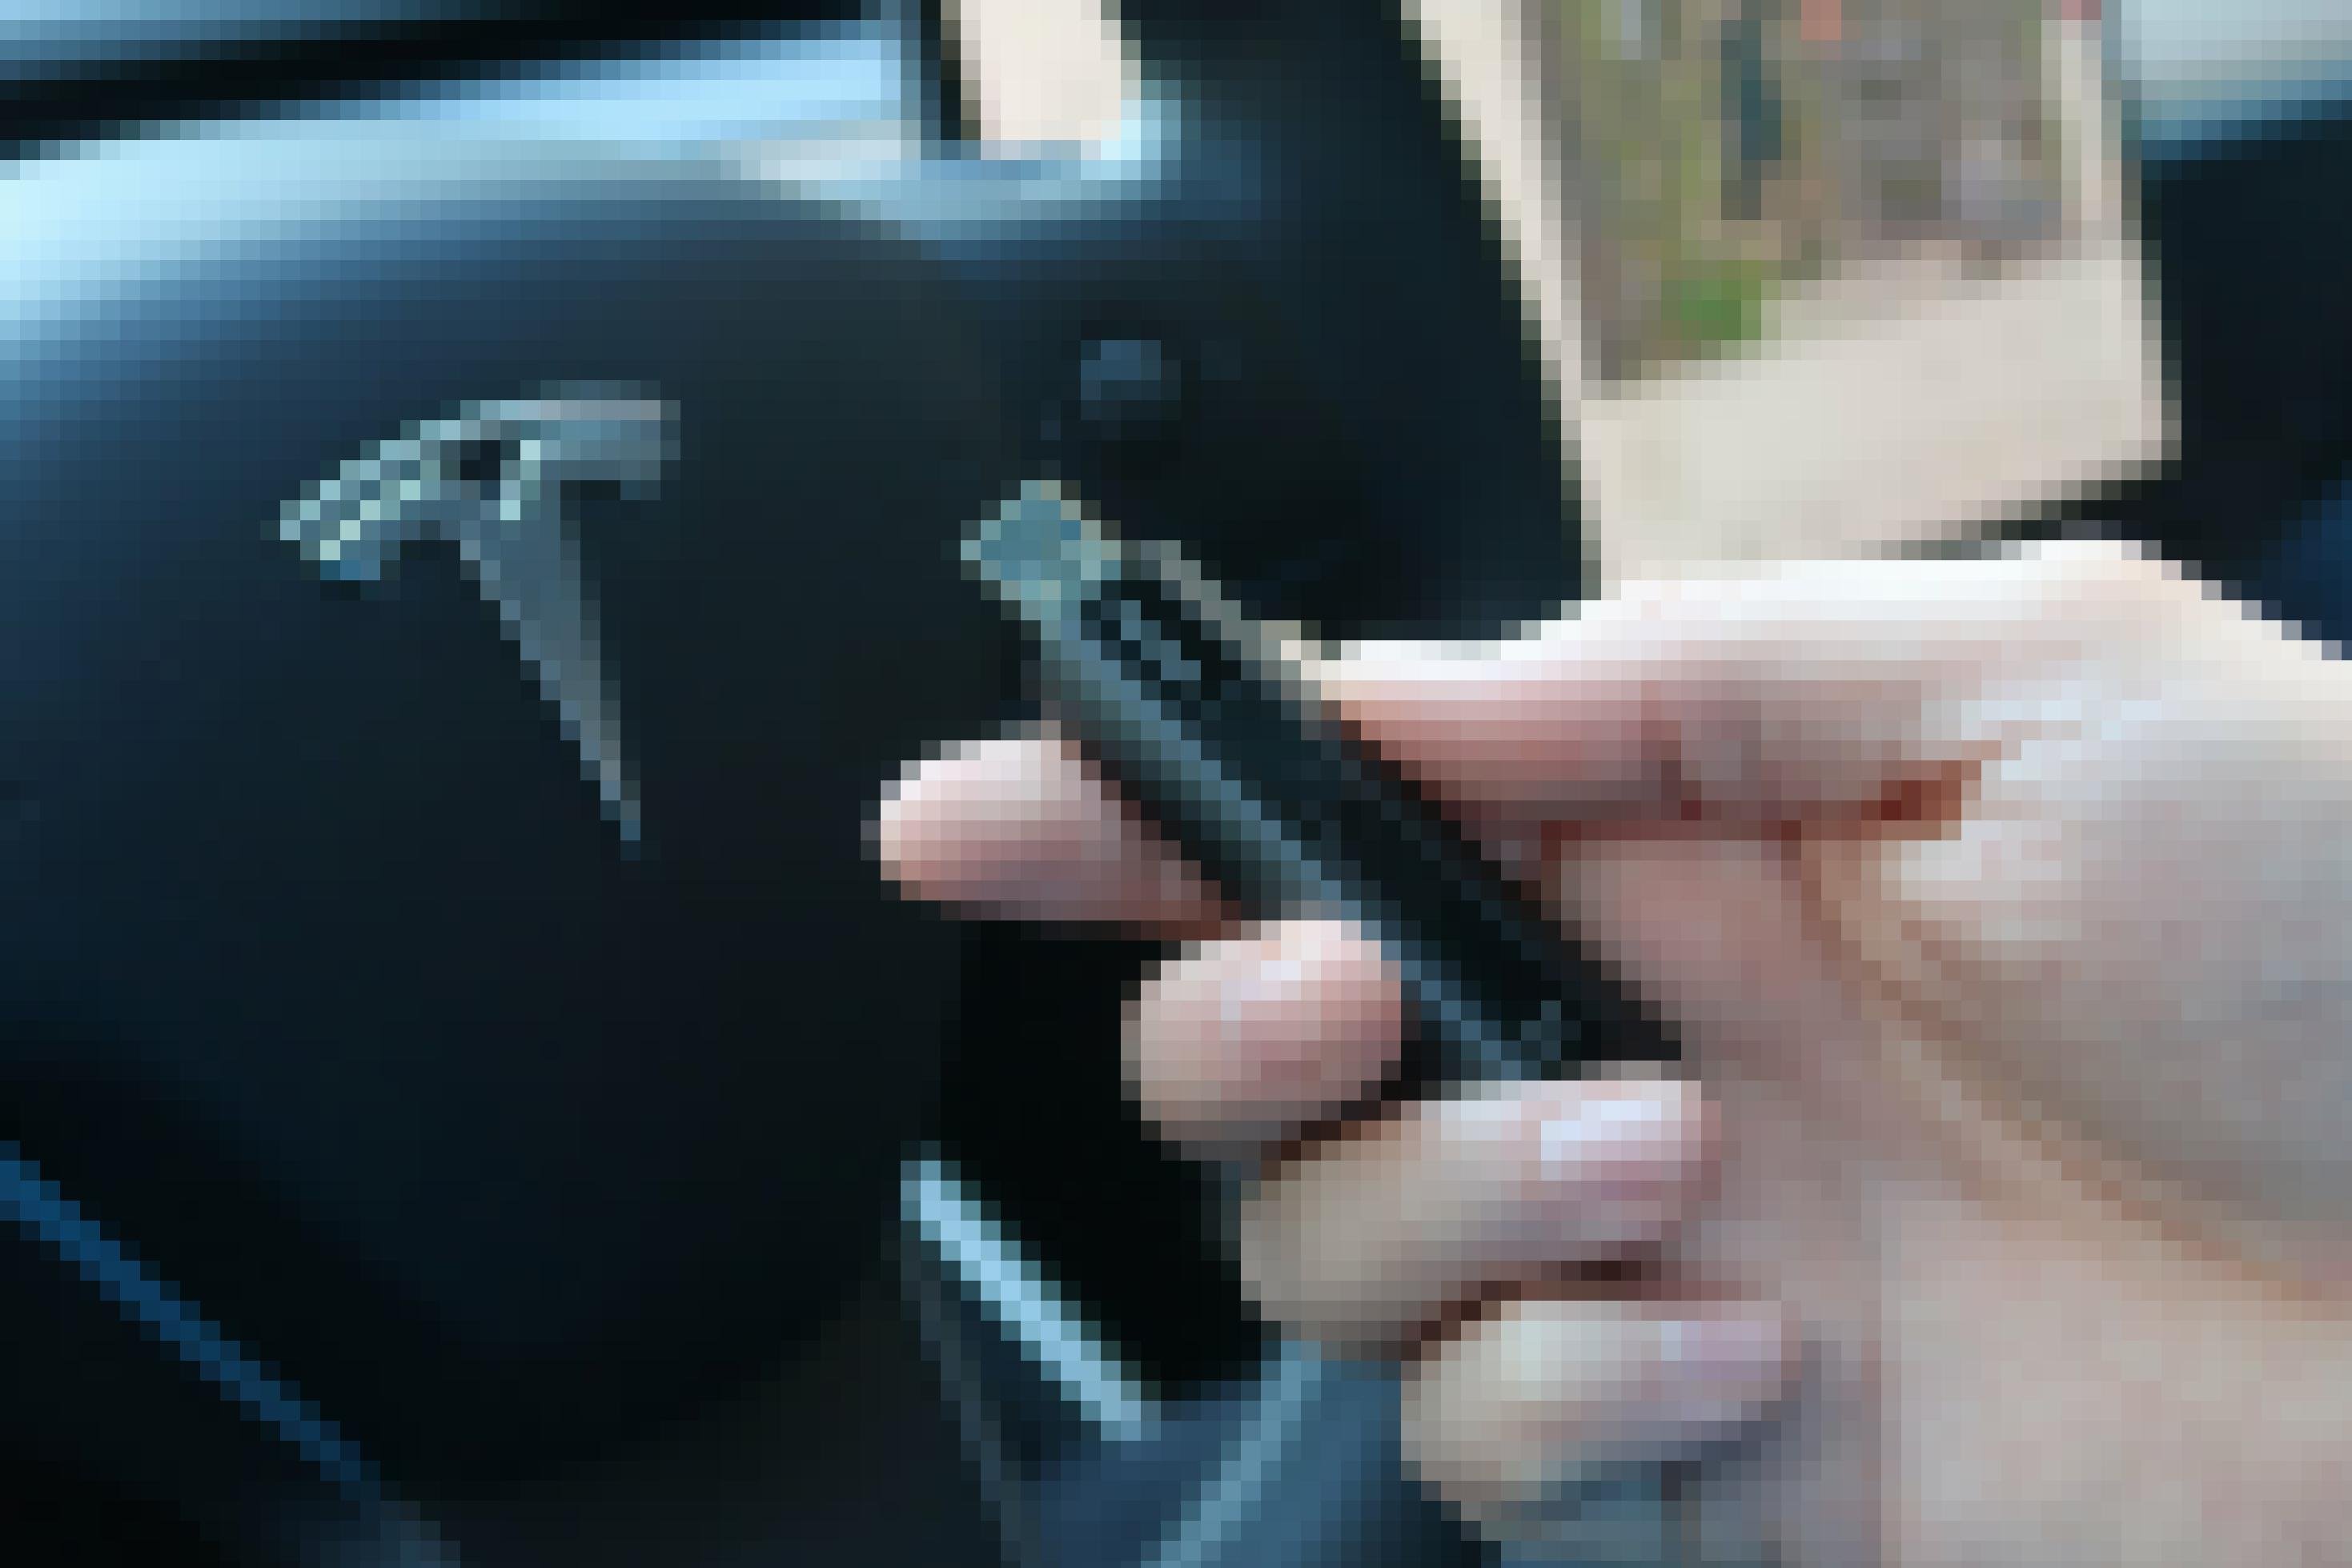 Nahaufnahme einer Hand, die einen USB-Stick hält. Im Hintergrund ist ein Lenkrad zu sehen.